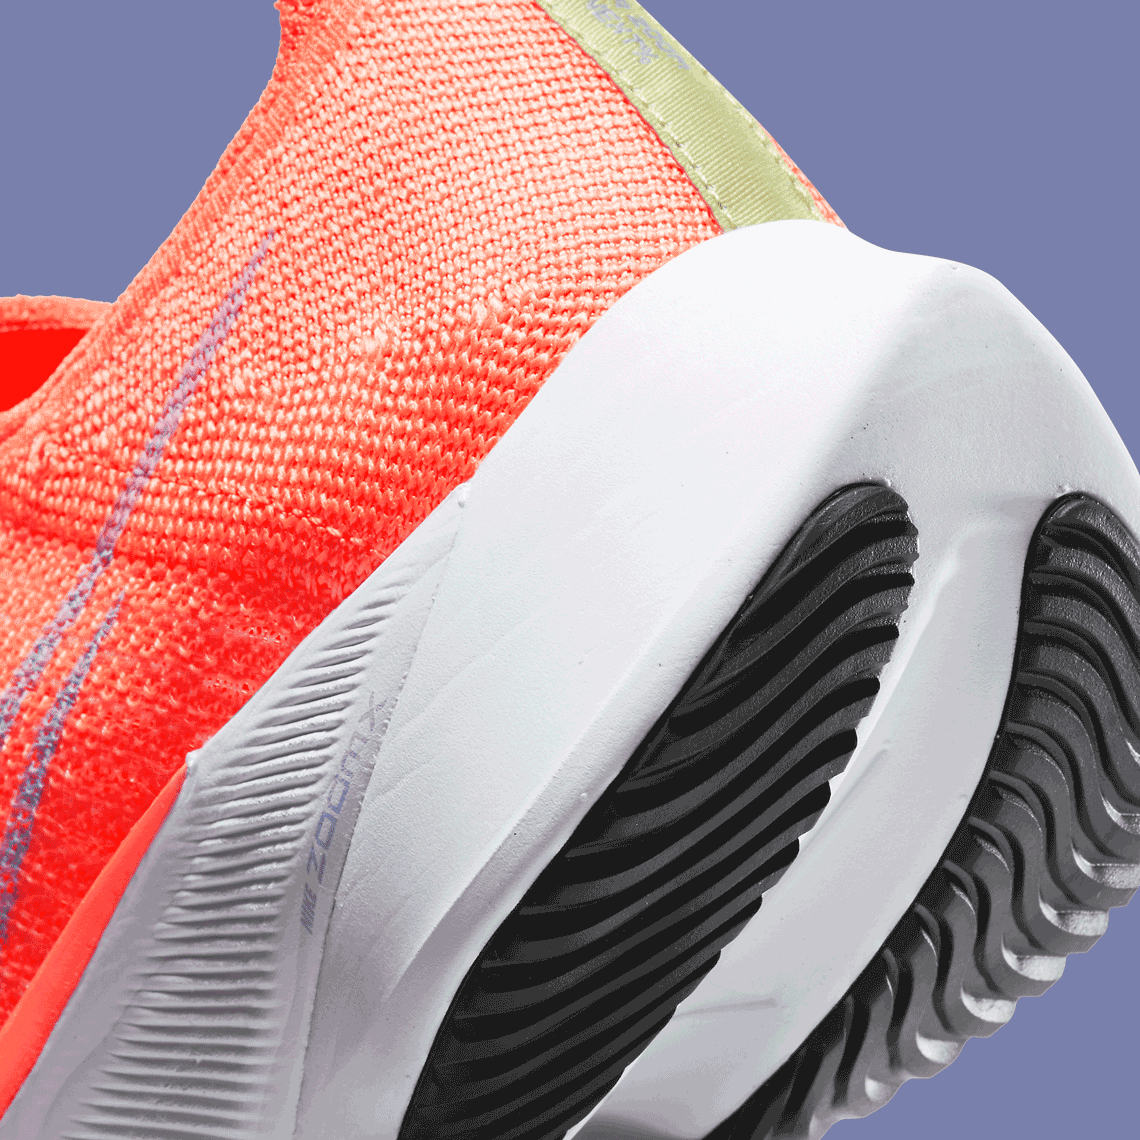 Nike Air Zoom Tempo NEXT% Bright Mango CI9924-800 | SneakerNews.com